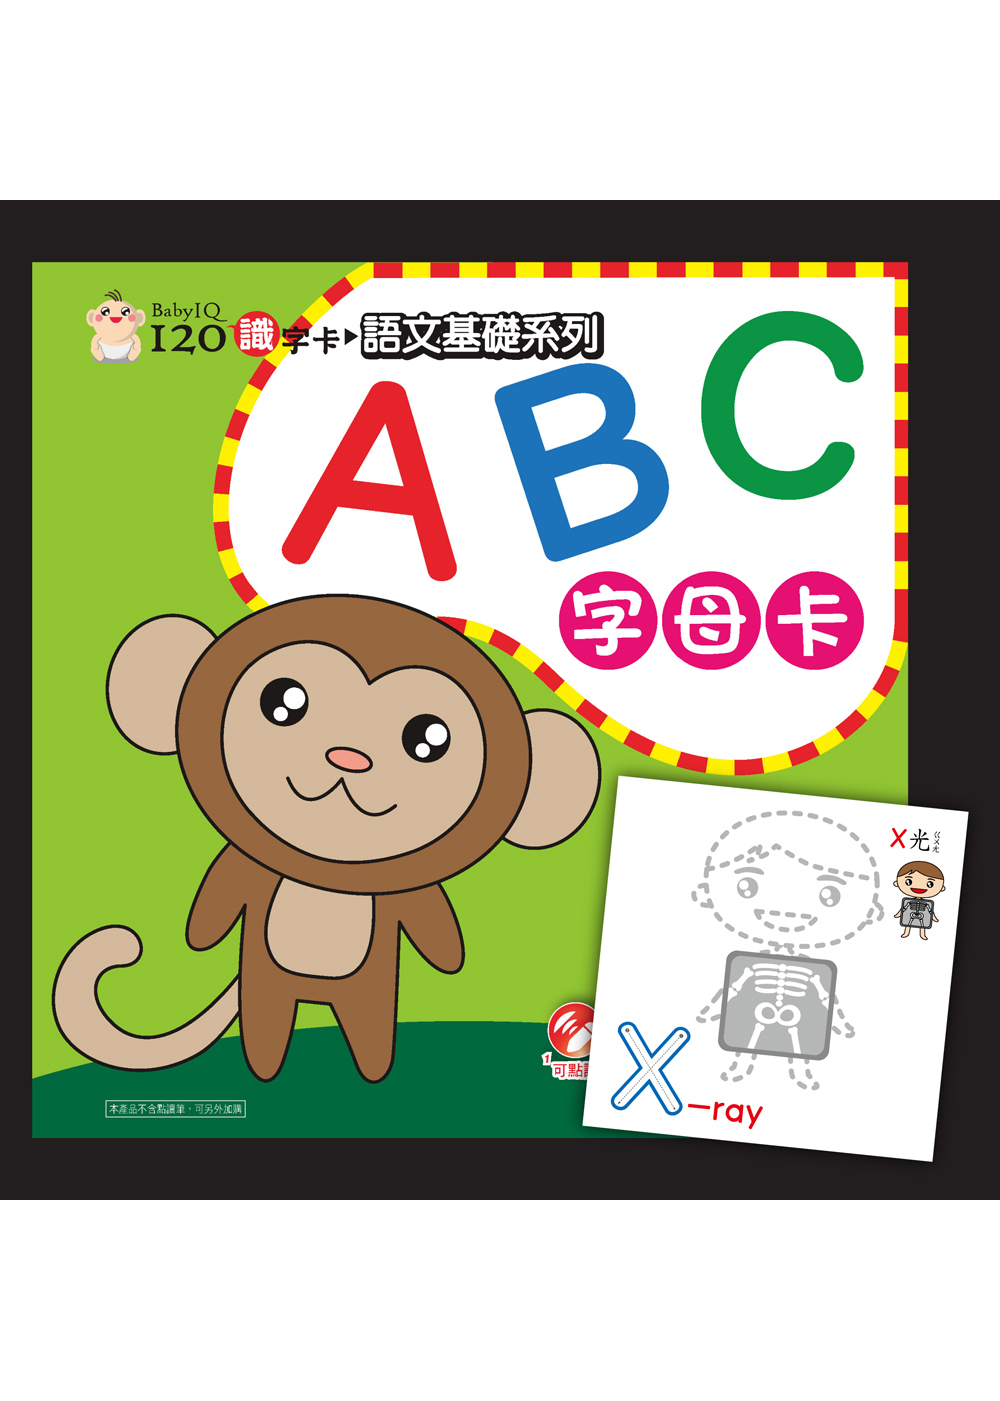 Baby IQ120識字卡-ABC字母卡